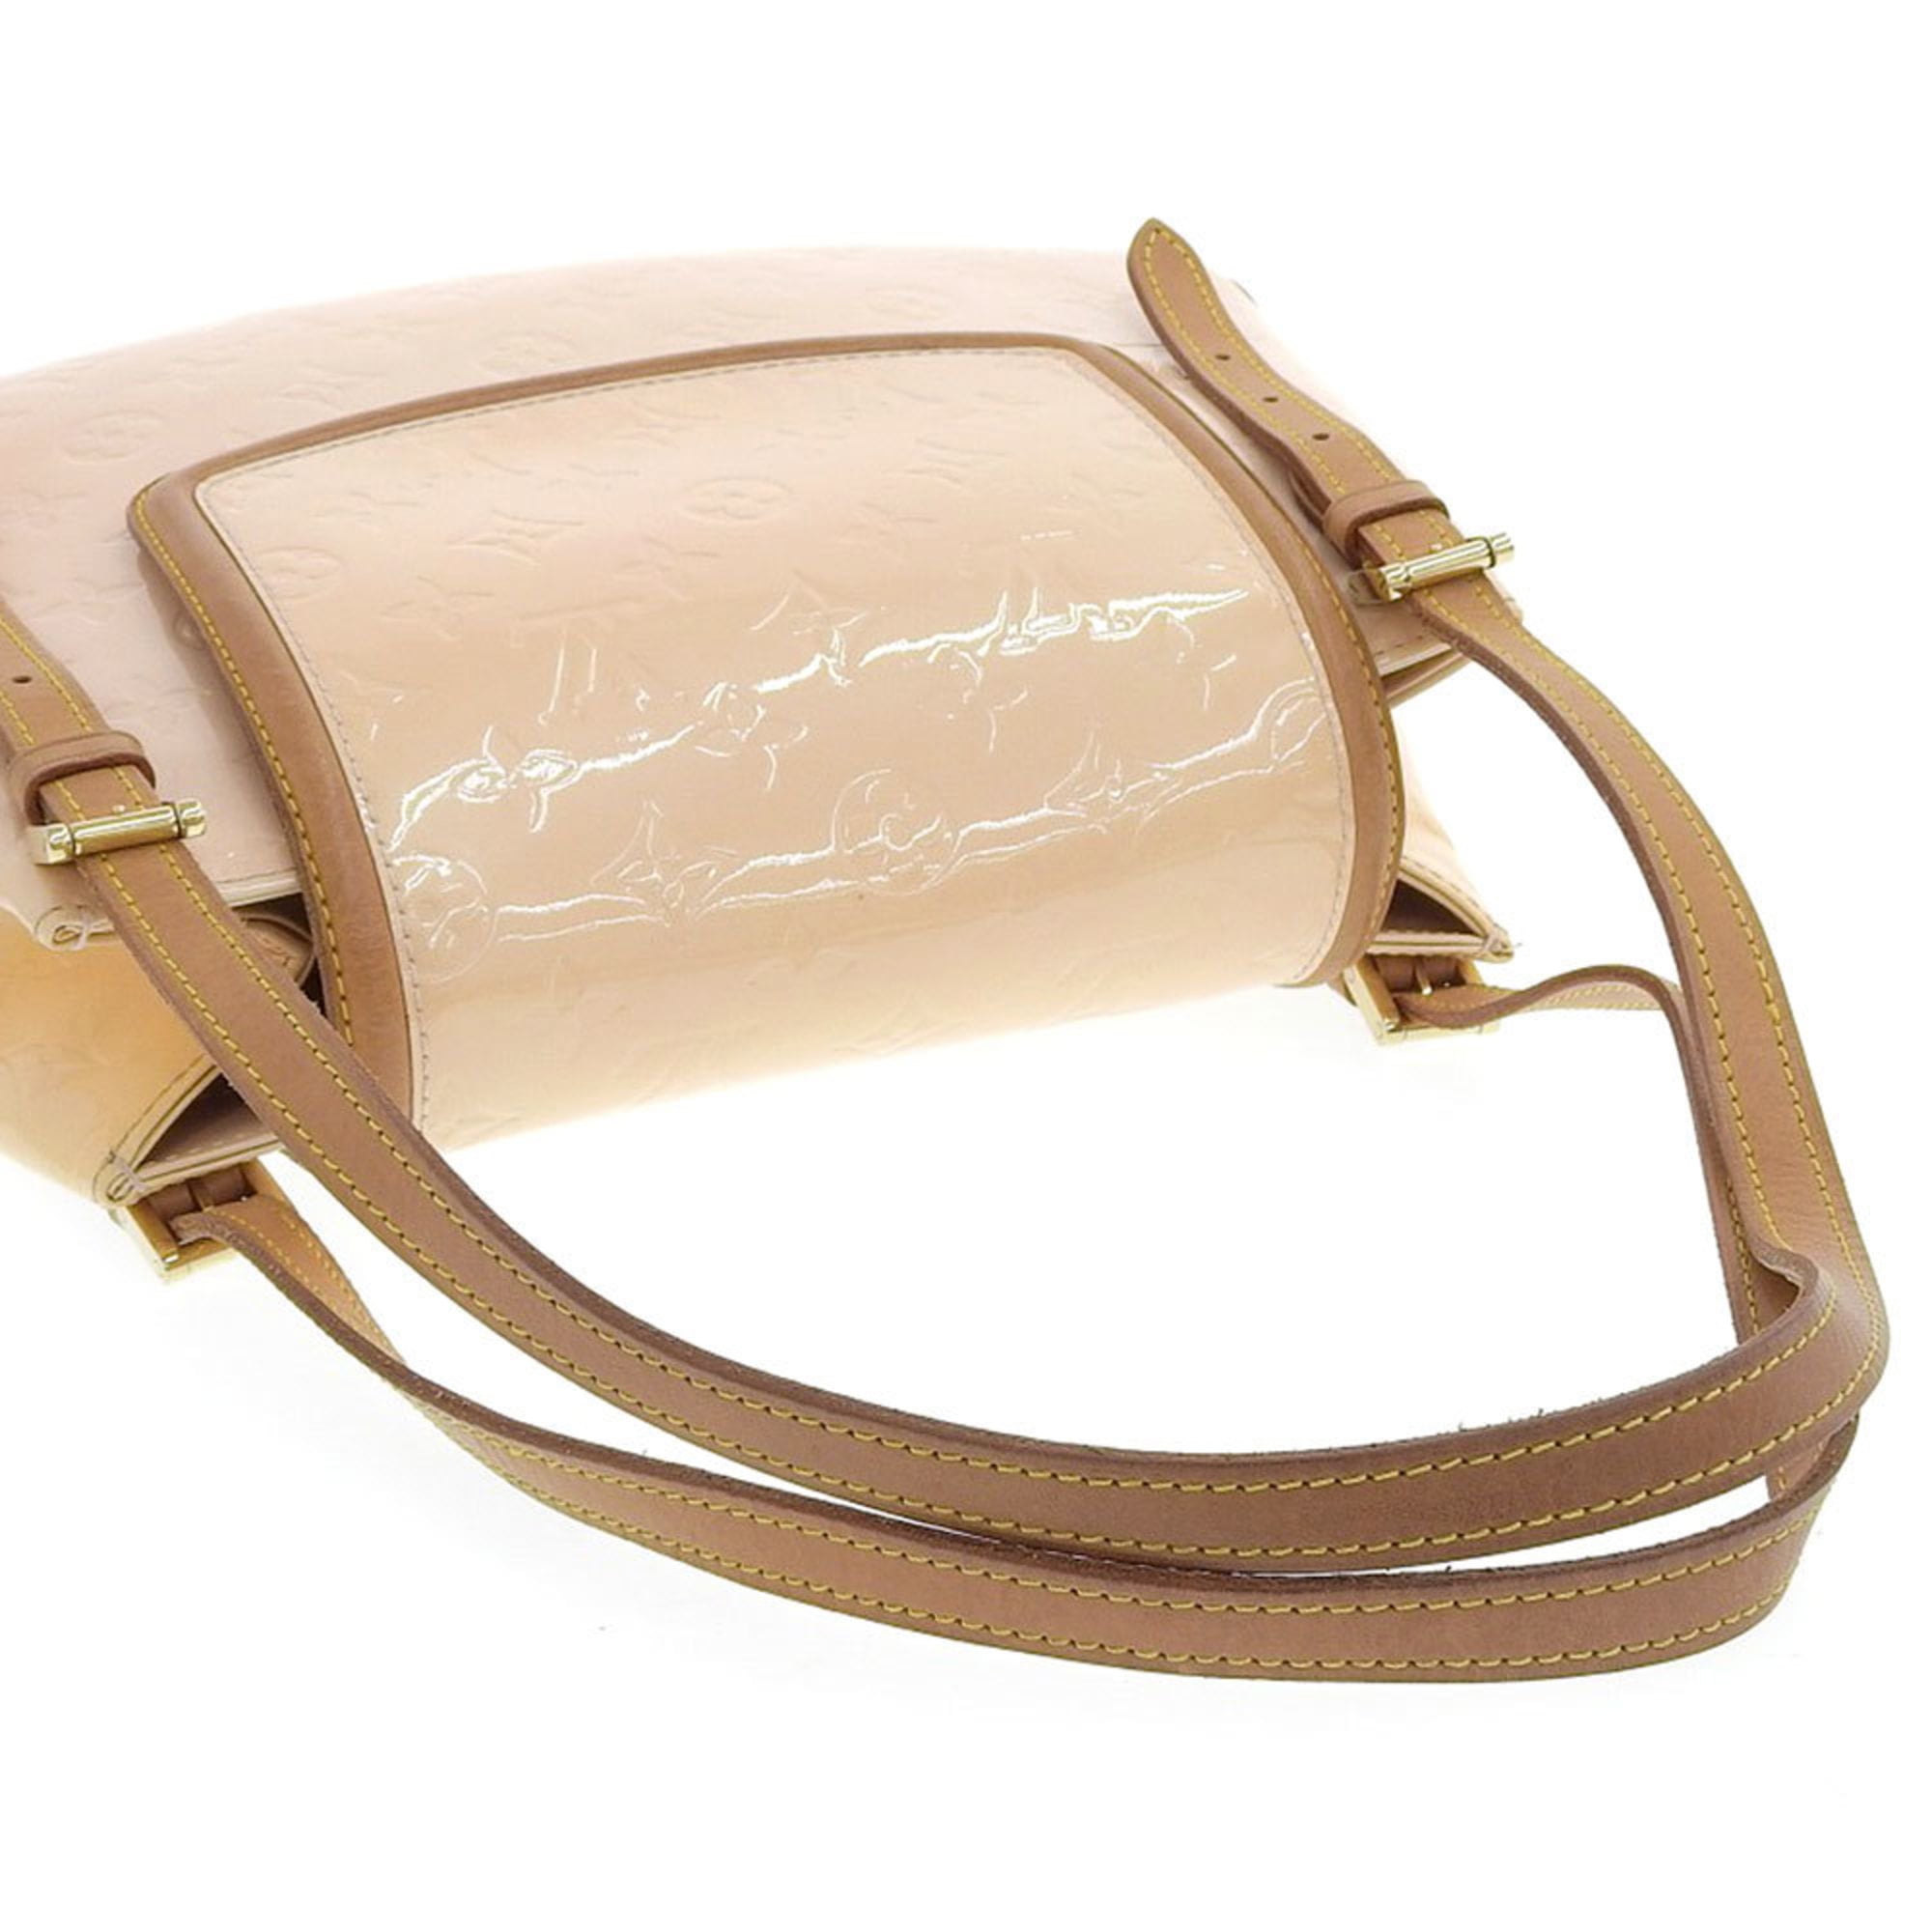 Louis Vuitton Vernis Mallory Square Bag - White Shoulder Bags, Handbags -  LOU114740